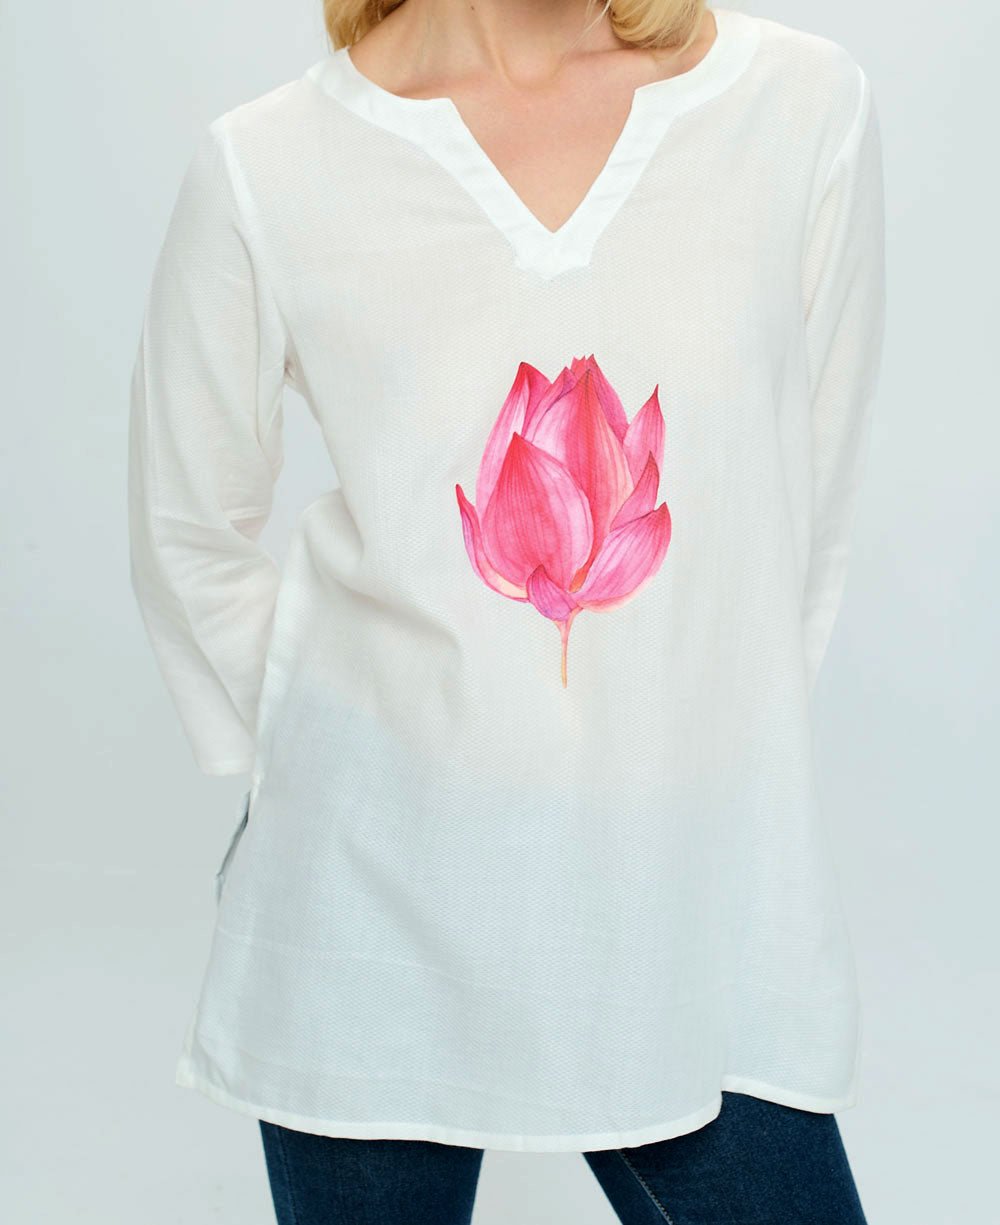 Lotus Design White Woven Cotton Tunic Top